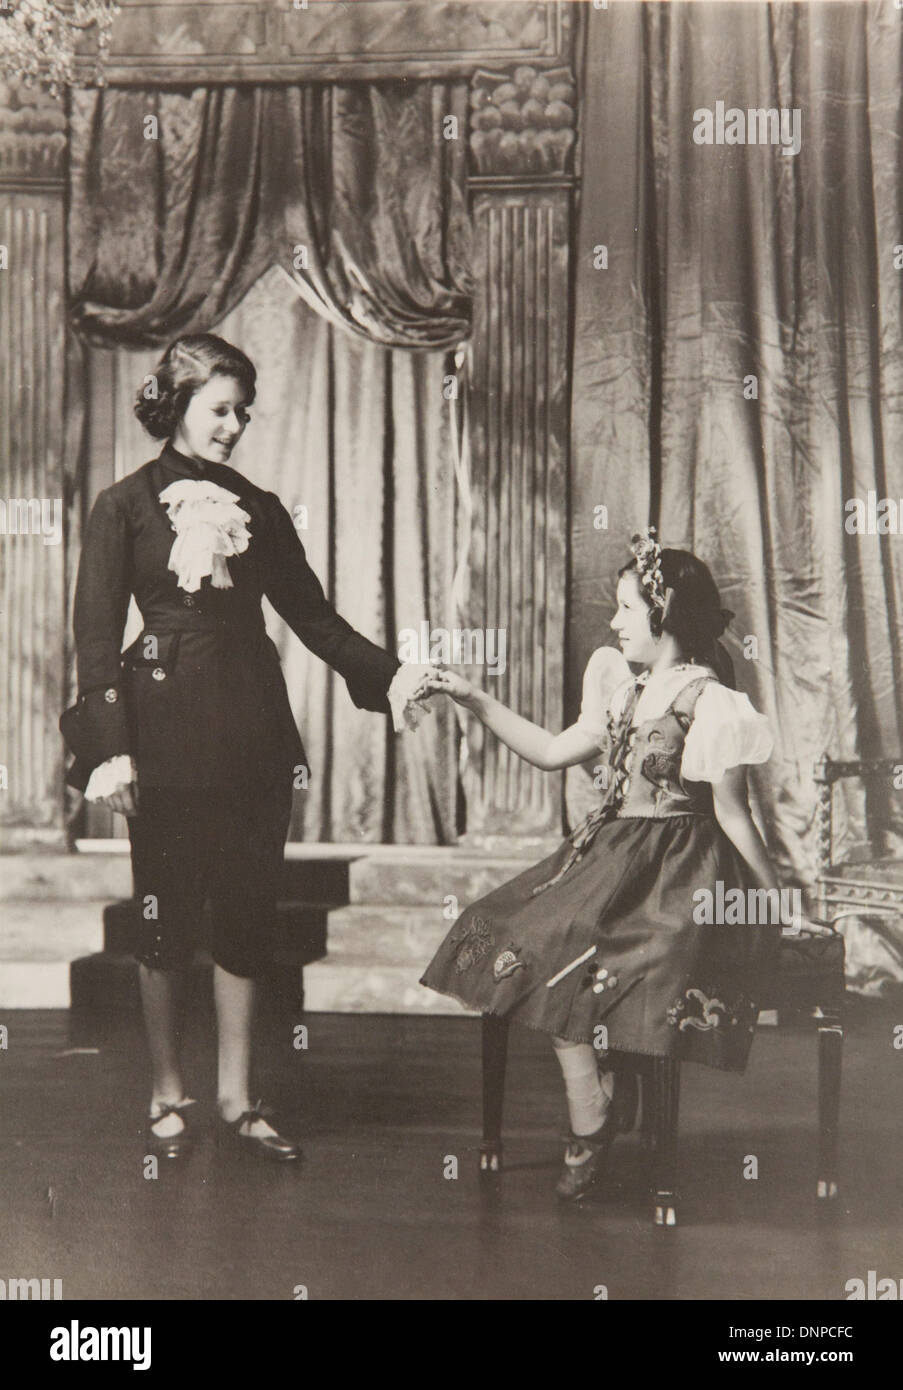 Recueillir des photographie de la princesse Elizabeth et la Princesse Margaret dans la vieille mère jouer Red Riding Boots, 1944. Banque D'Images